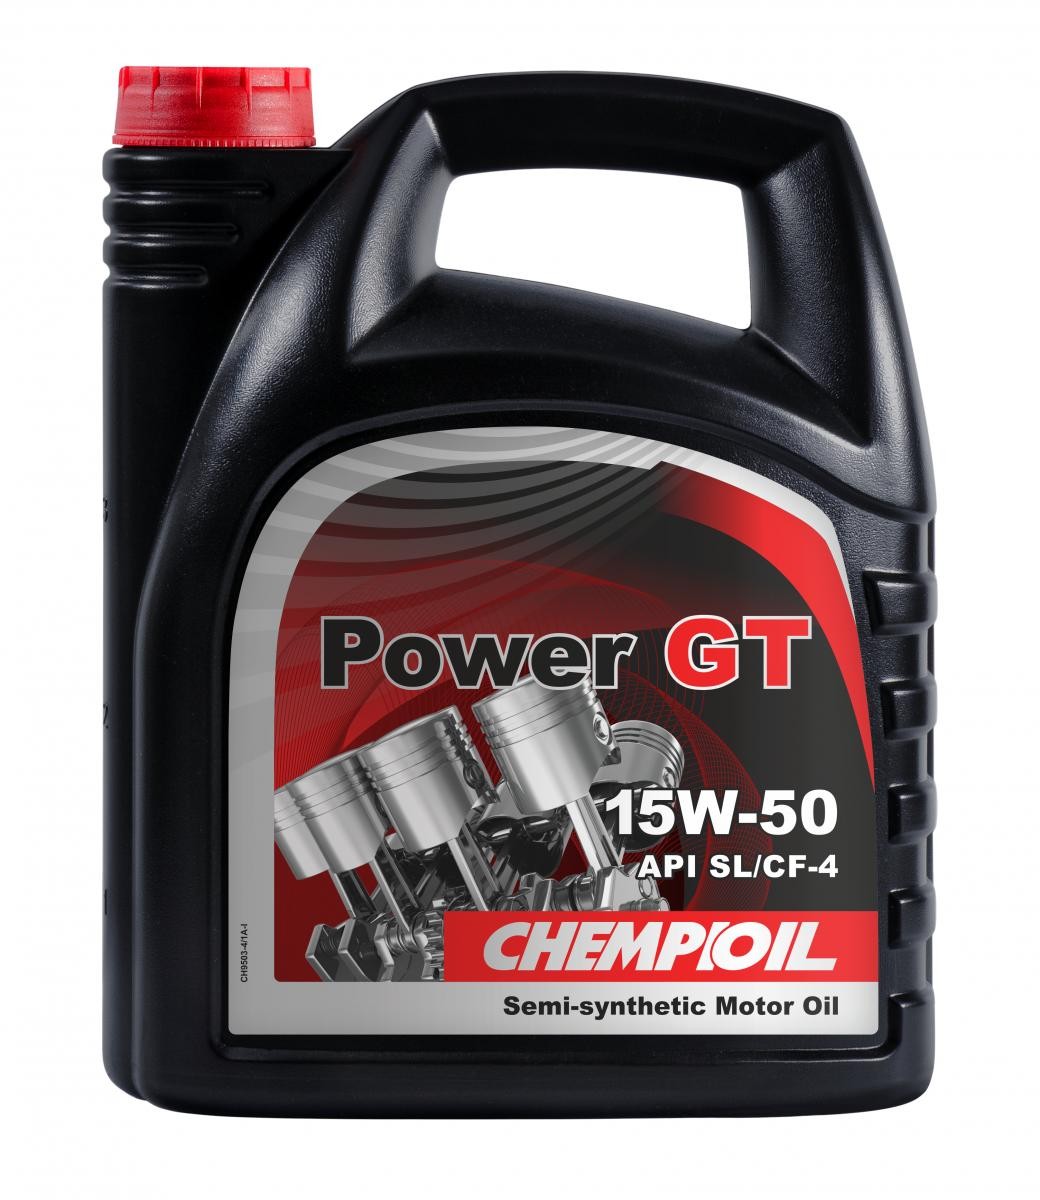 Automobile oil ACEA E2 CHEMPIOIL - CH9503-4 Power, GT